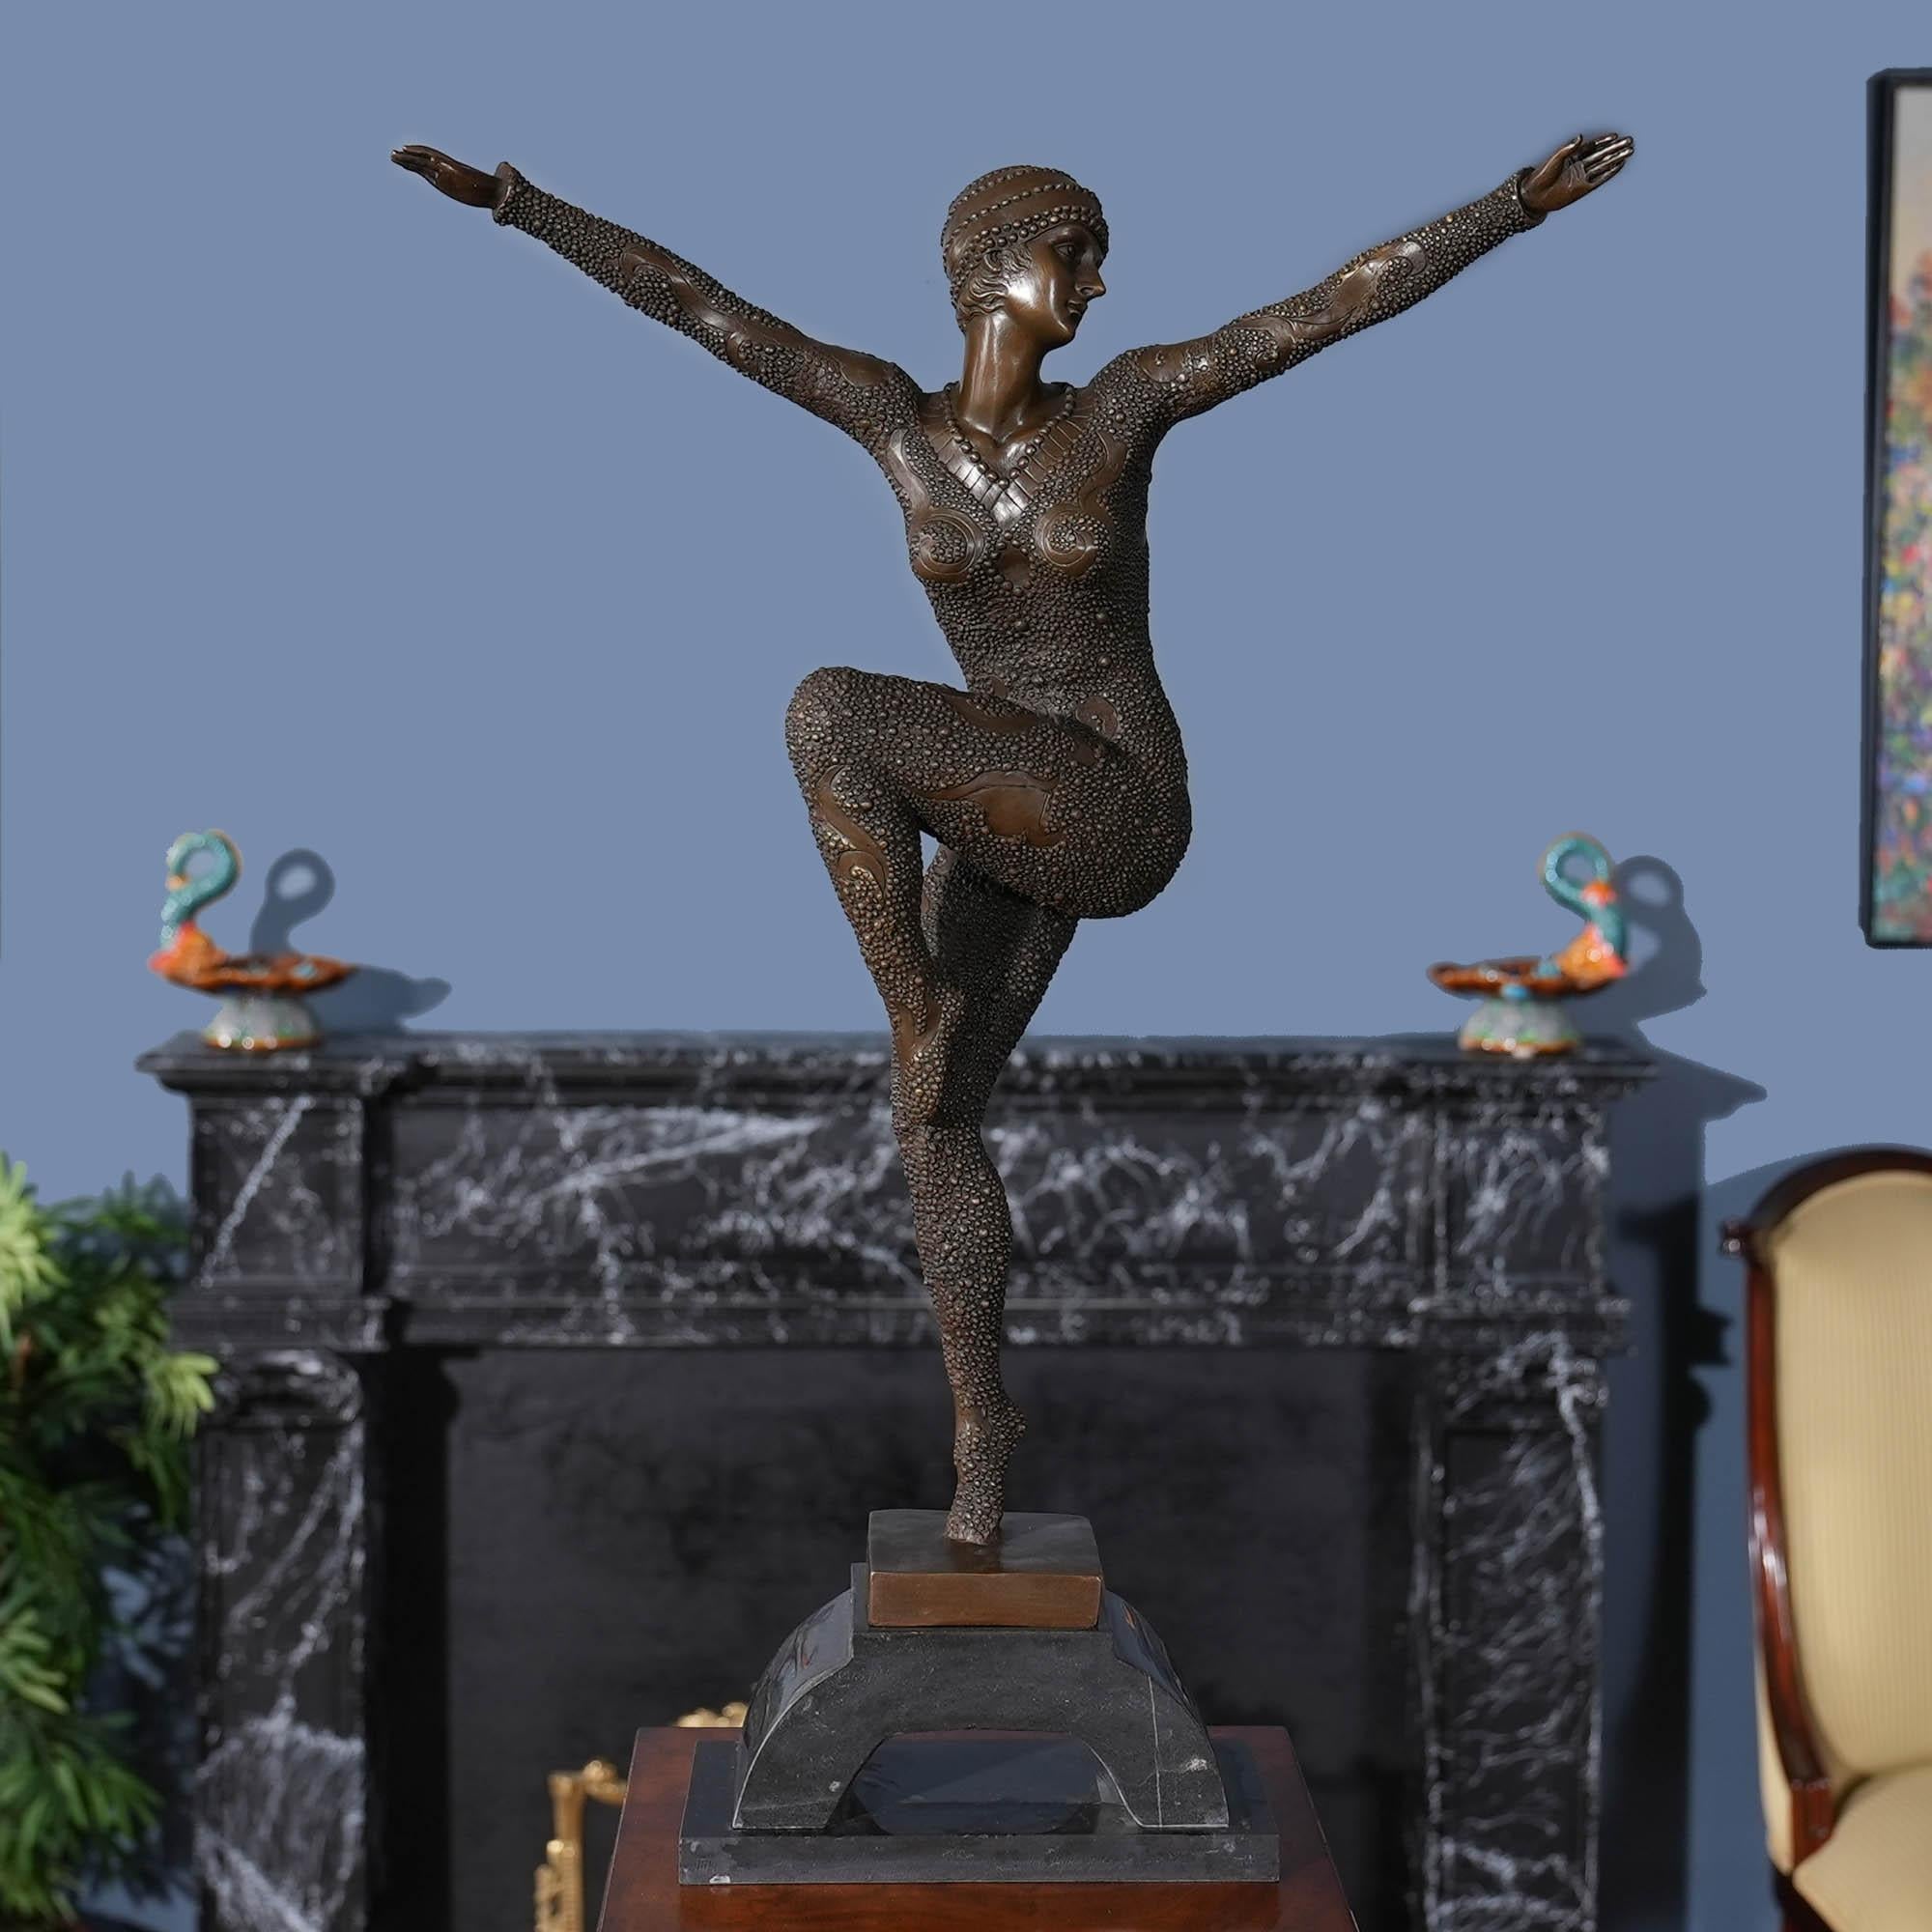 Gracieuse même lorsqu'elle est immobile, la danseuse pailletée en bronze sur socle en marbre est un ajout saisissant à tout décor. Utilisant les méthodes traditionnelles de fonte à la cire perdue, la statue de la femme dansante en bronze est ornée